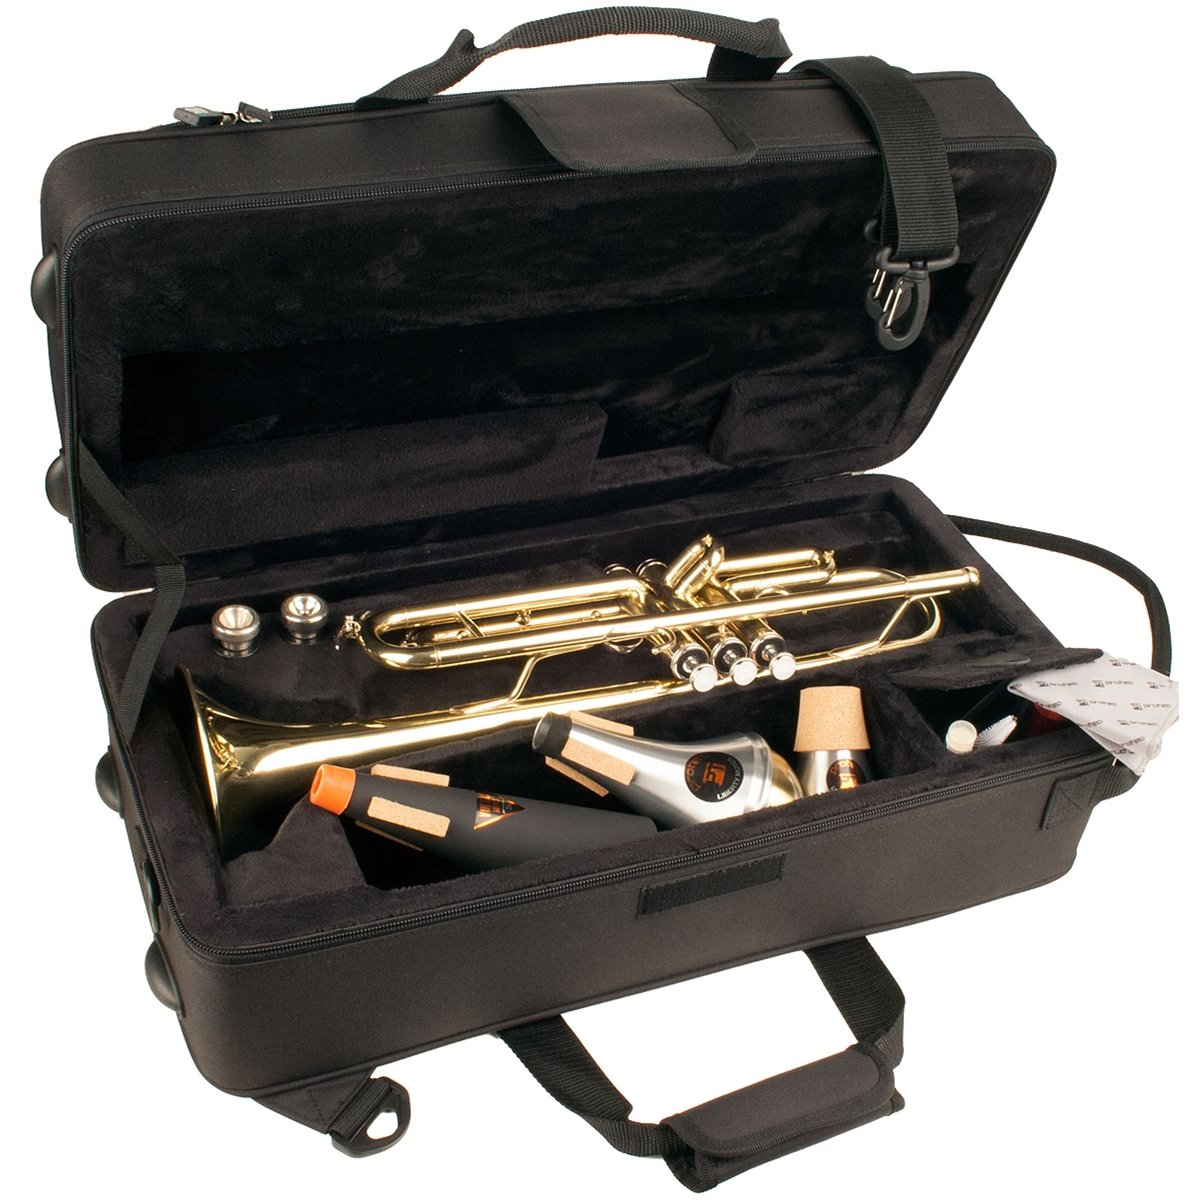 Protec - Trumpet MAX Case (Rectangular)-Case-Protec-Music Elements